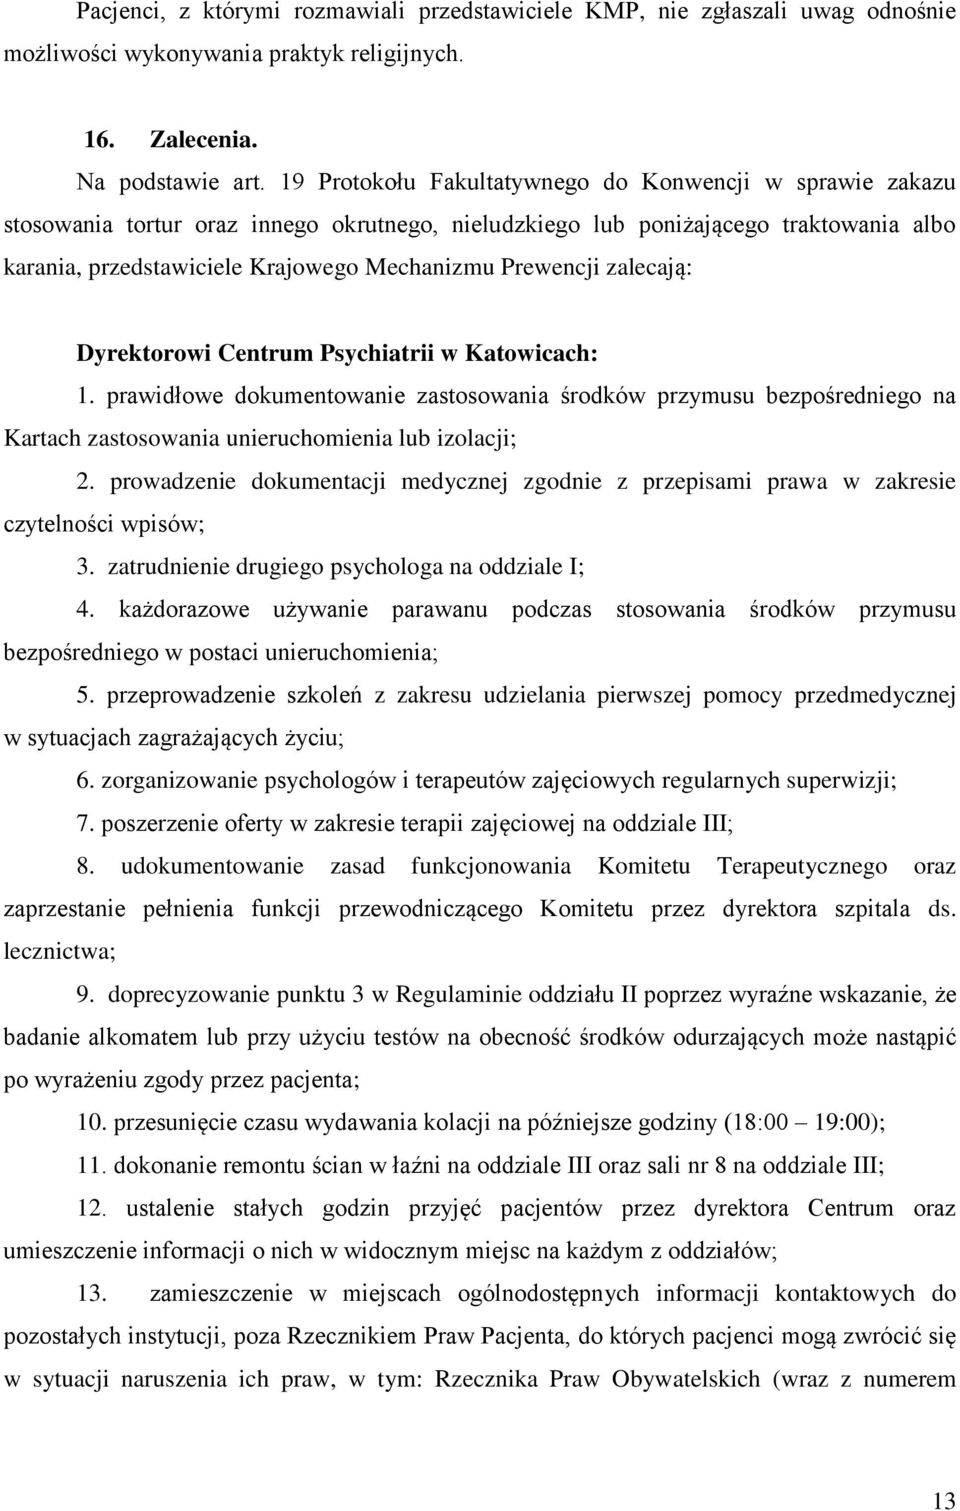 Prewencji zalecają: Dyrektorowi Centrum Psychiatrii w Katowicach: 1. prawidłowe dokumentowanie zastosowania środków przymusu bezpośredniego na Kartach zastosowania unieruchomienia lub izolacji; 2.